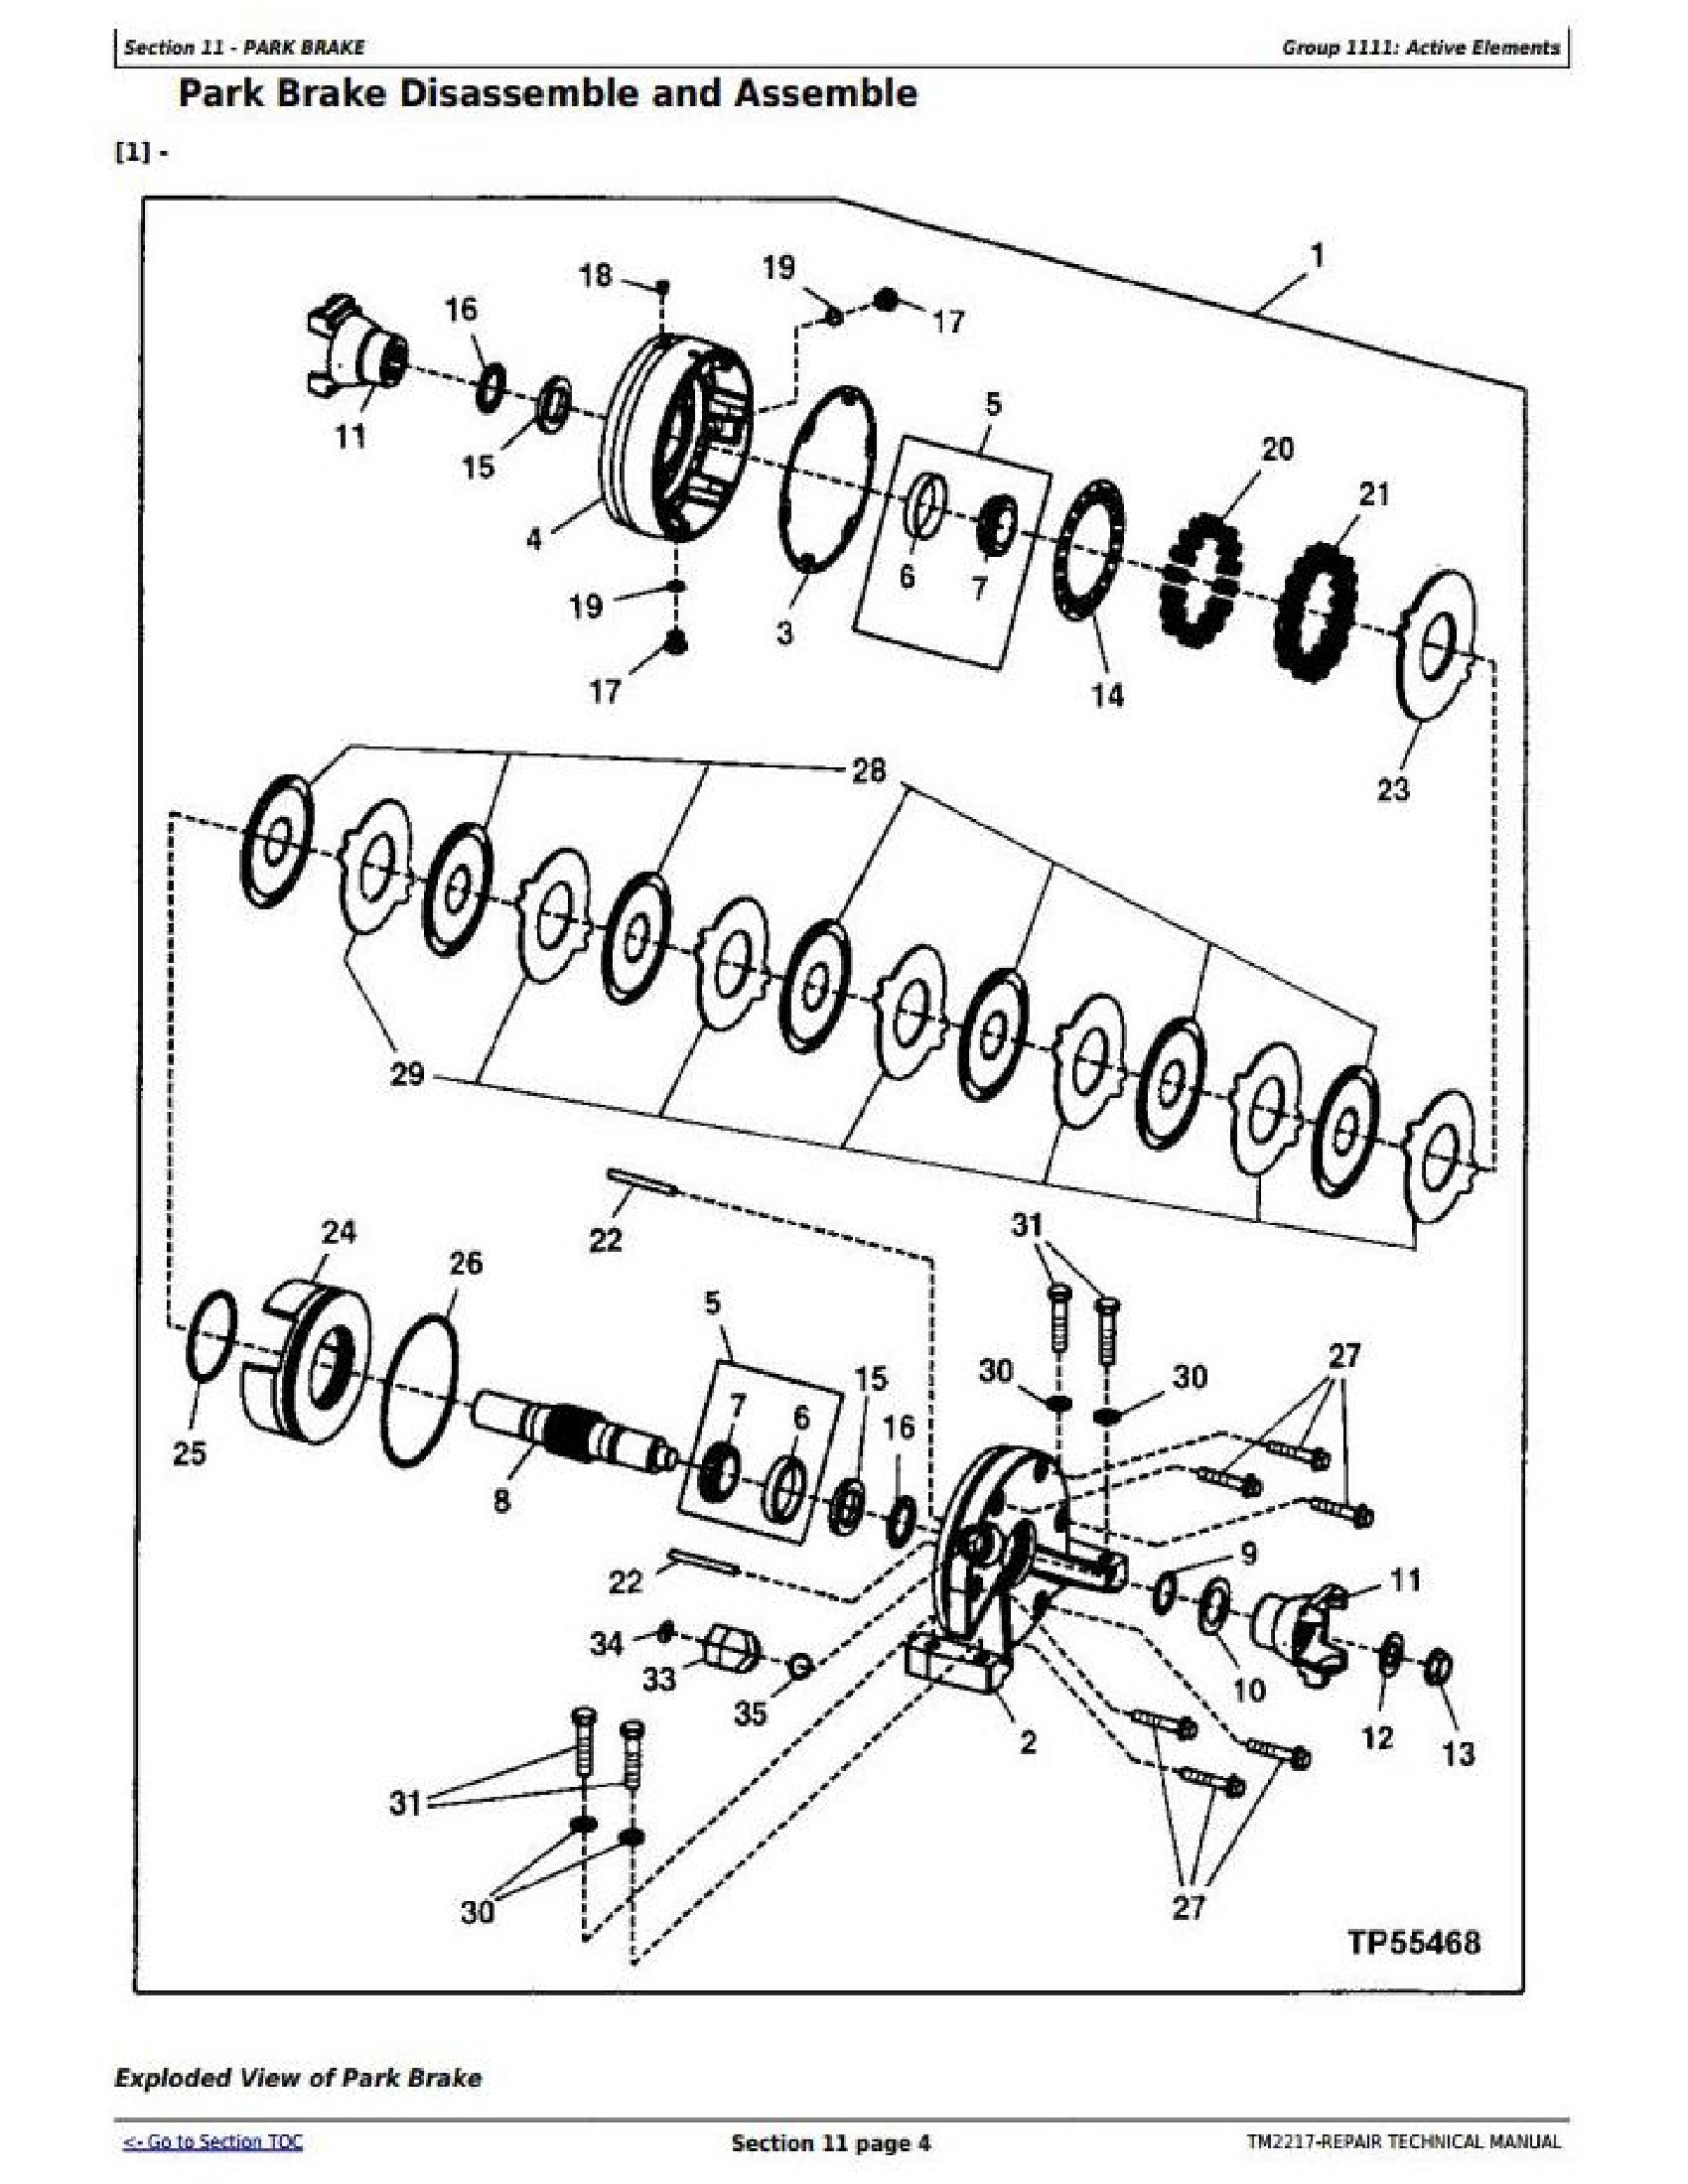 John Deere R4023 manual pdf